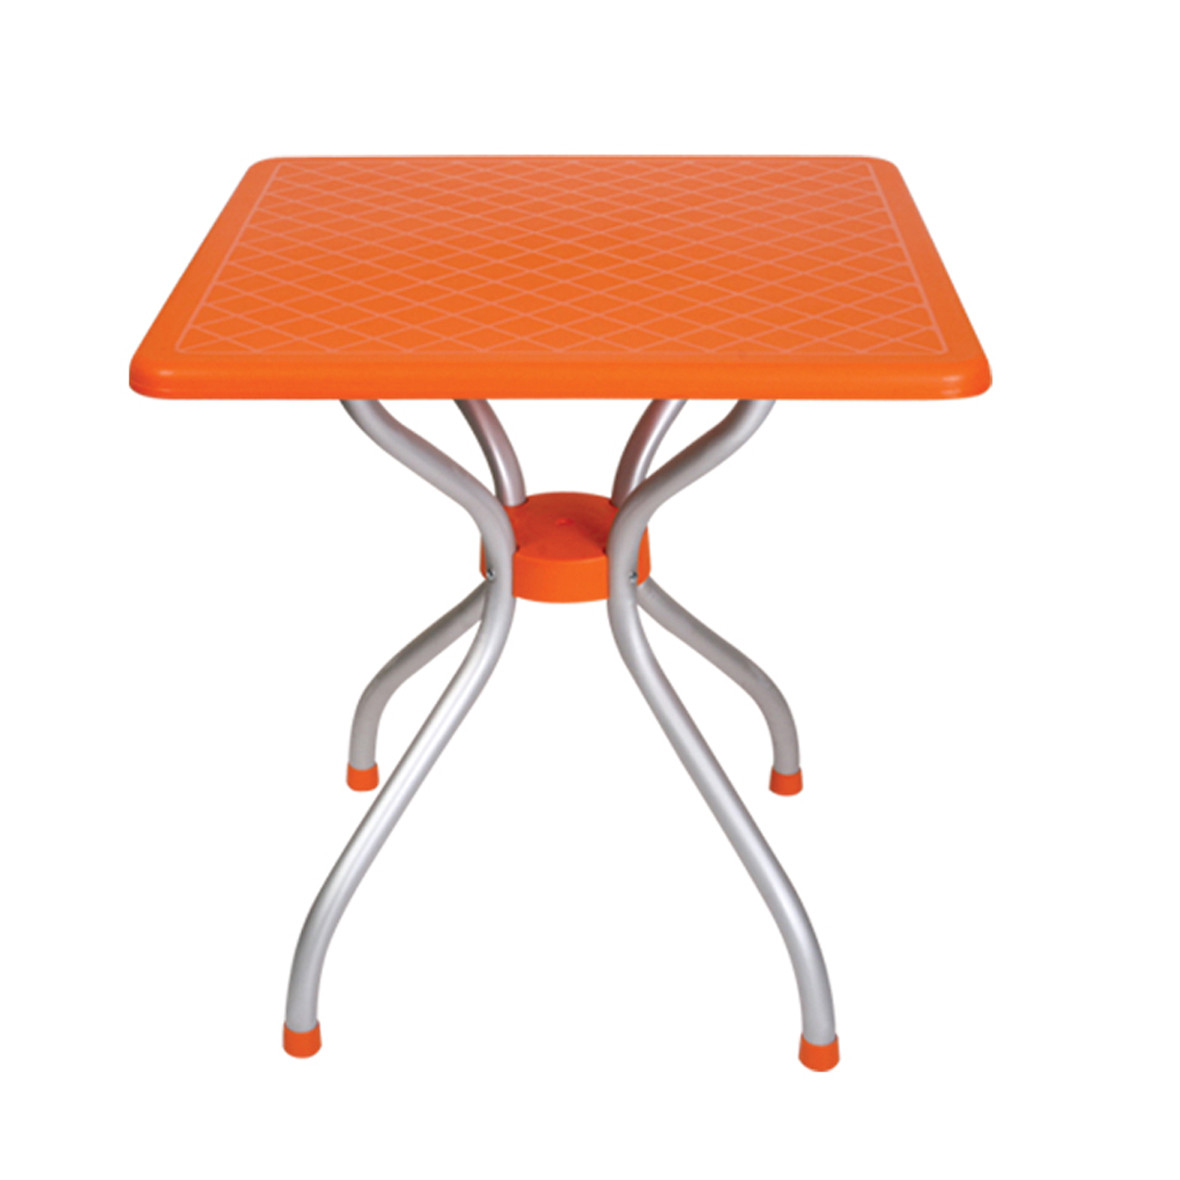 Оранжевый столик. Оранжевый стол. Стол оранжевый квадратный. Стол пластиковый оранжевый.